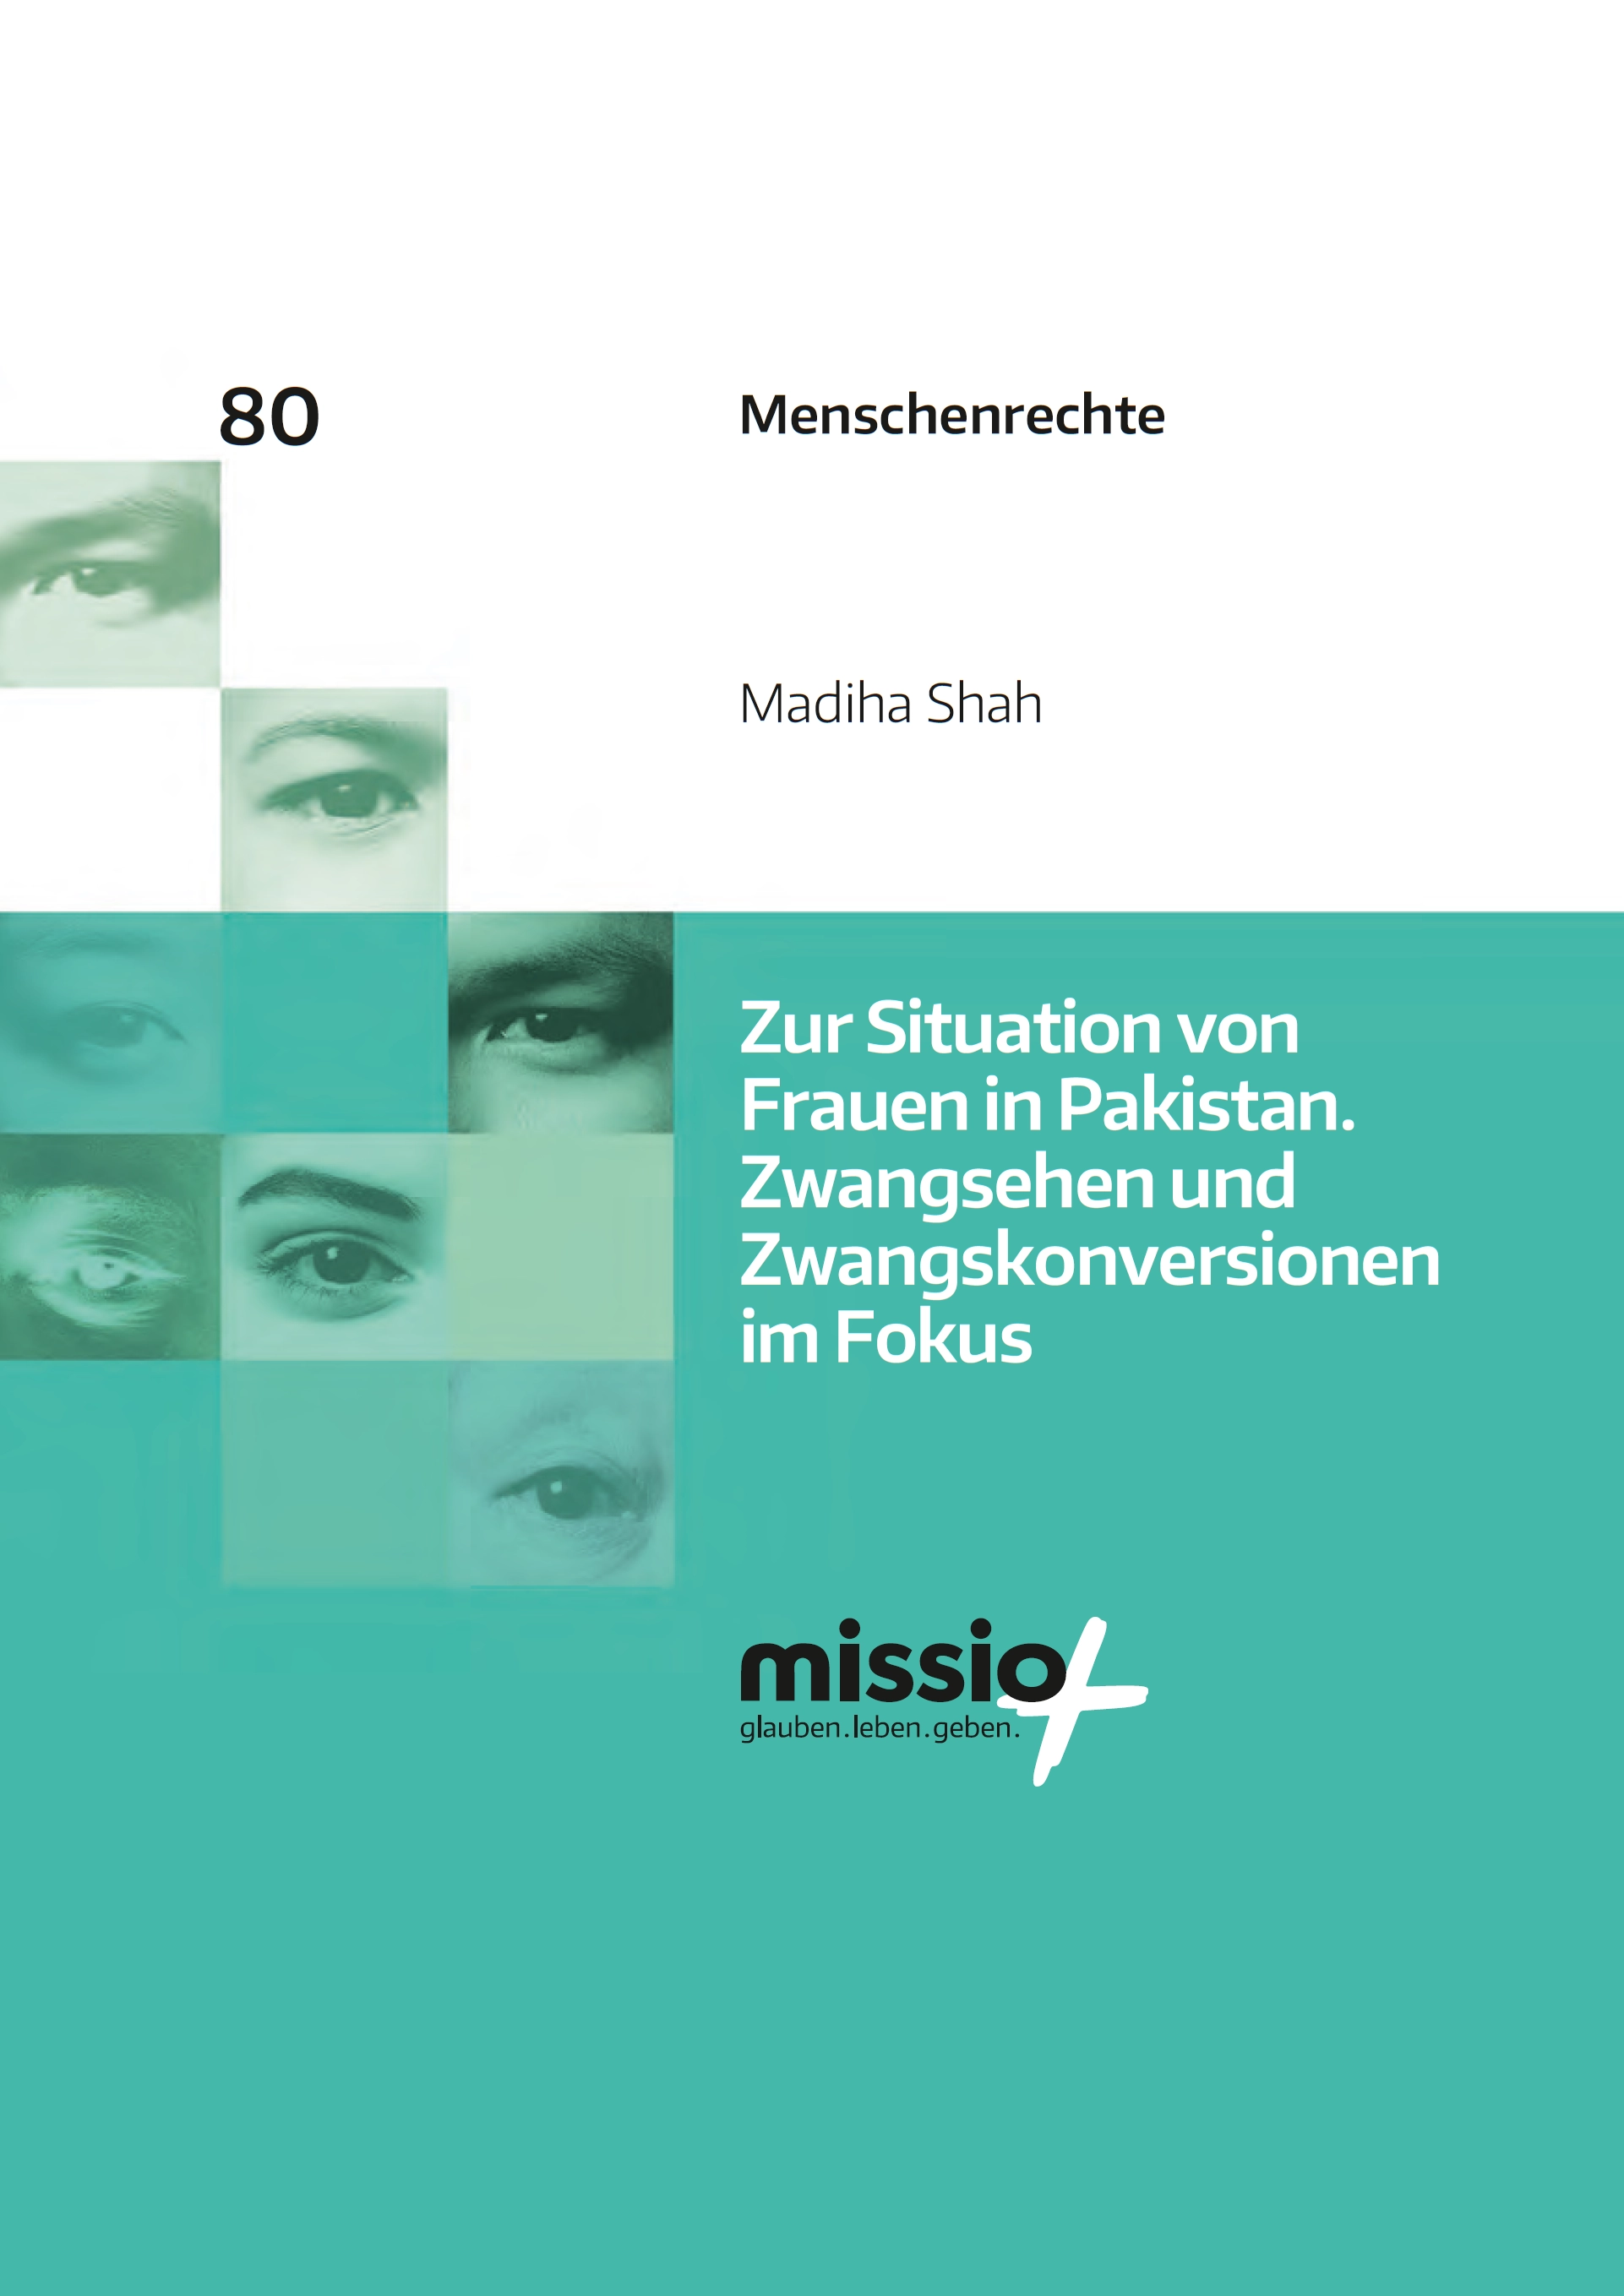 Titelblatt der Menschenrechtsstudie 80: „Zur Situation von Frauen in Pakistan. Zwangsehen und Zwangskonversionen im Fokus”